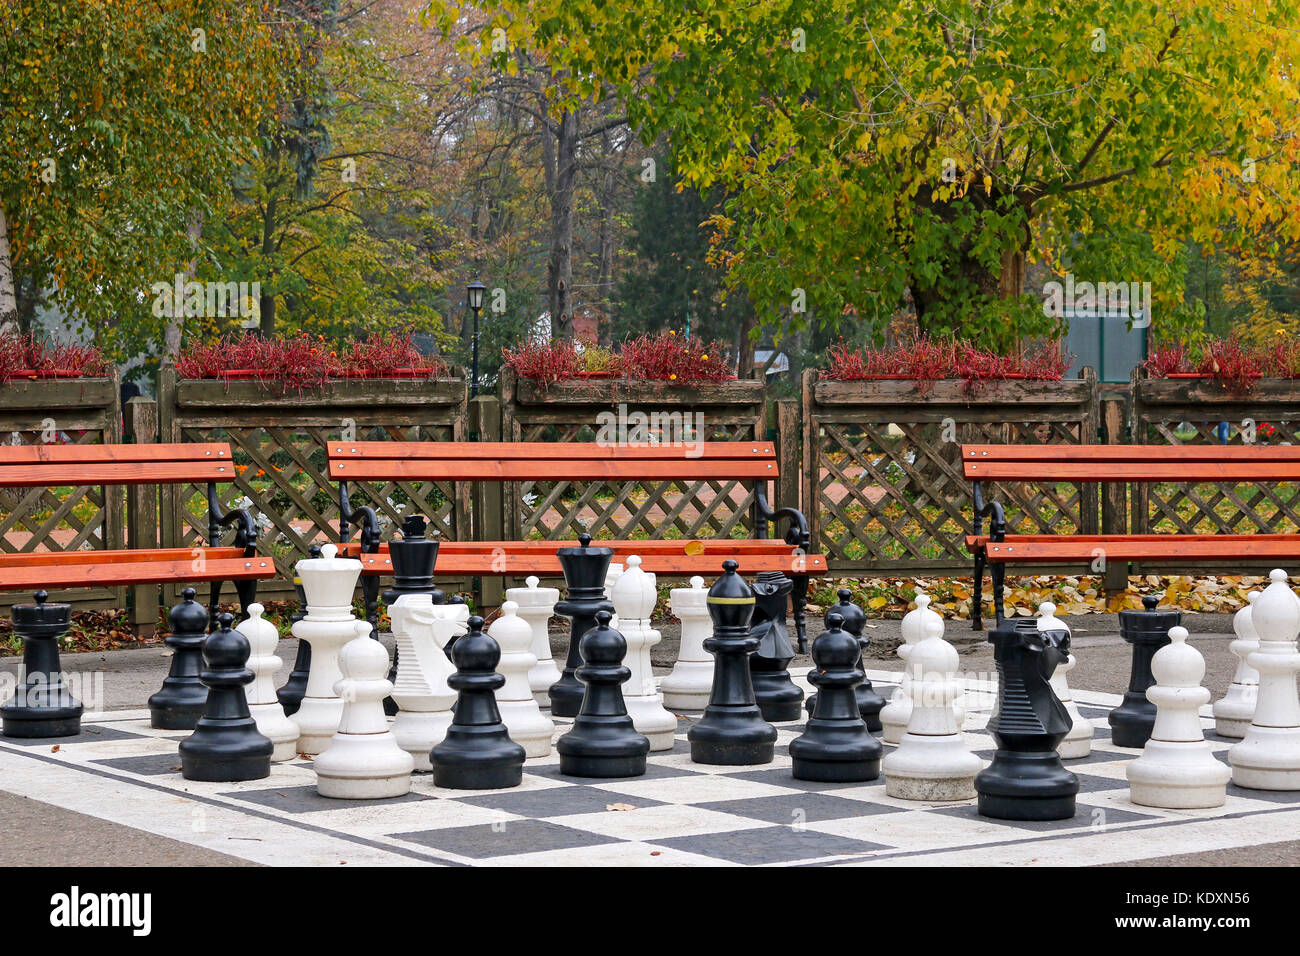 In bianco e nero a scacchi figure nel parco stagione autunno Foto Stock